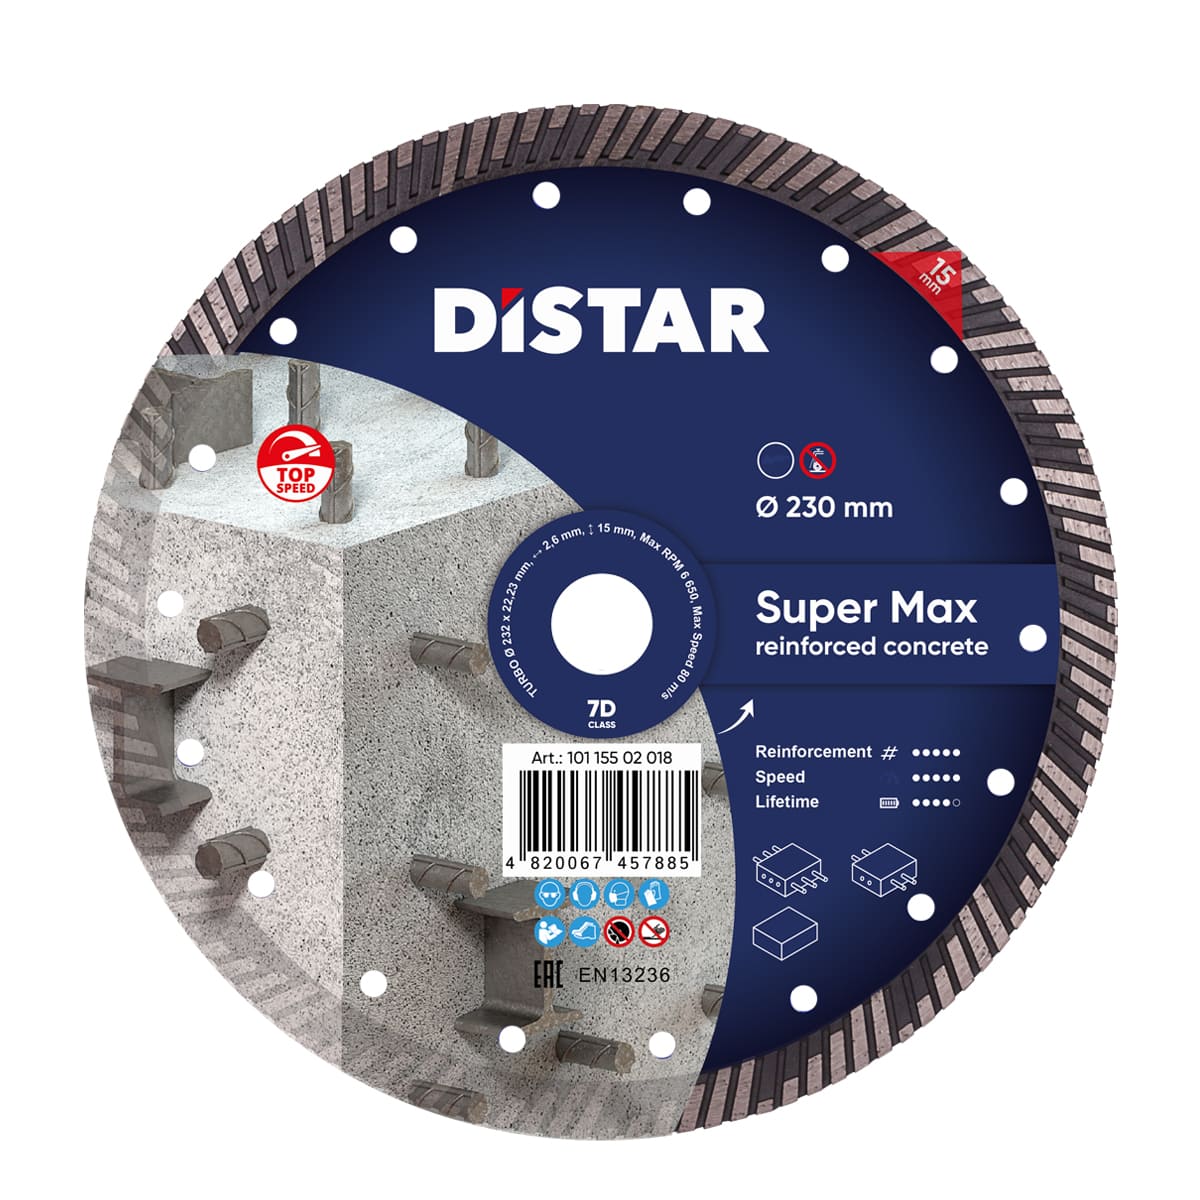 Diamanttrennscheibe Turbo 232 Super Max